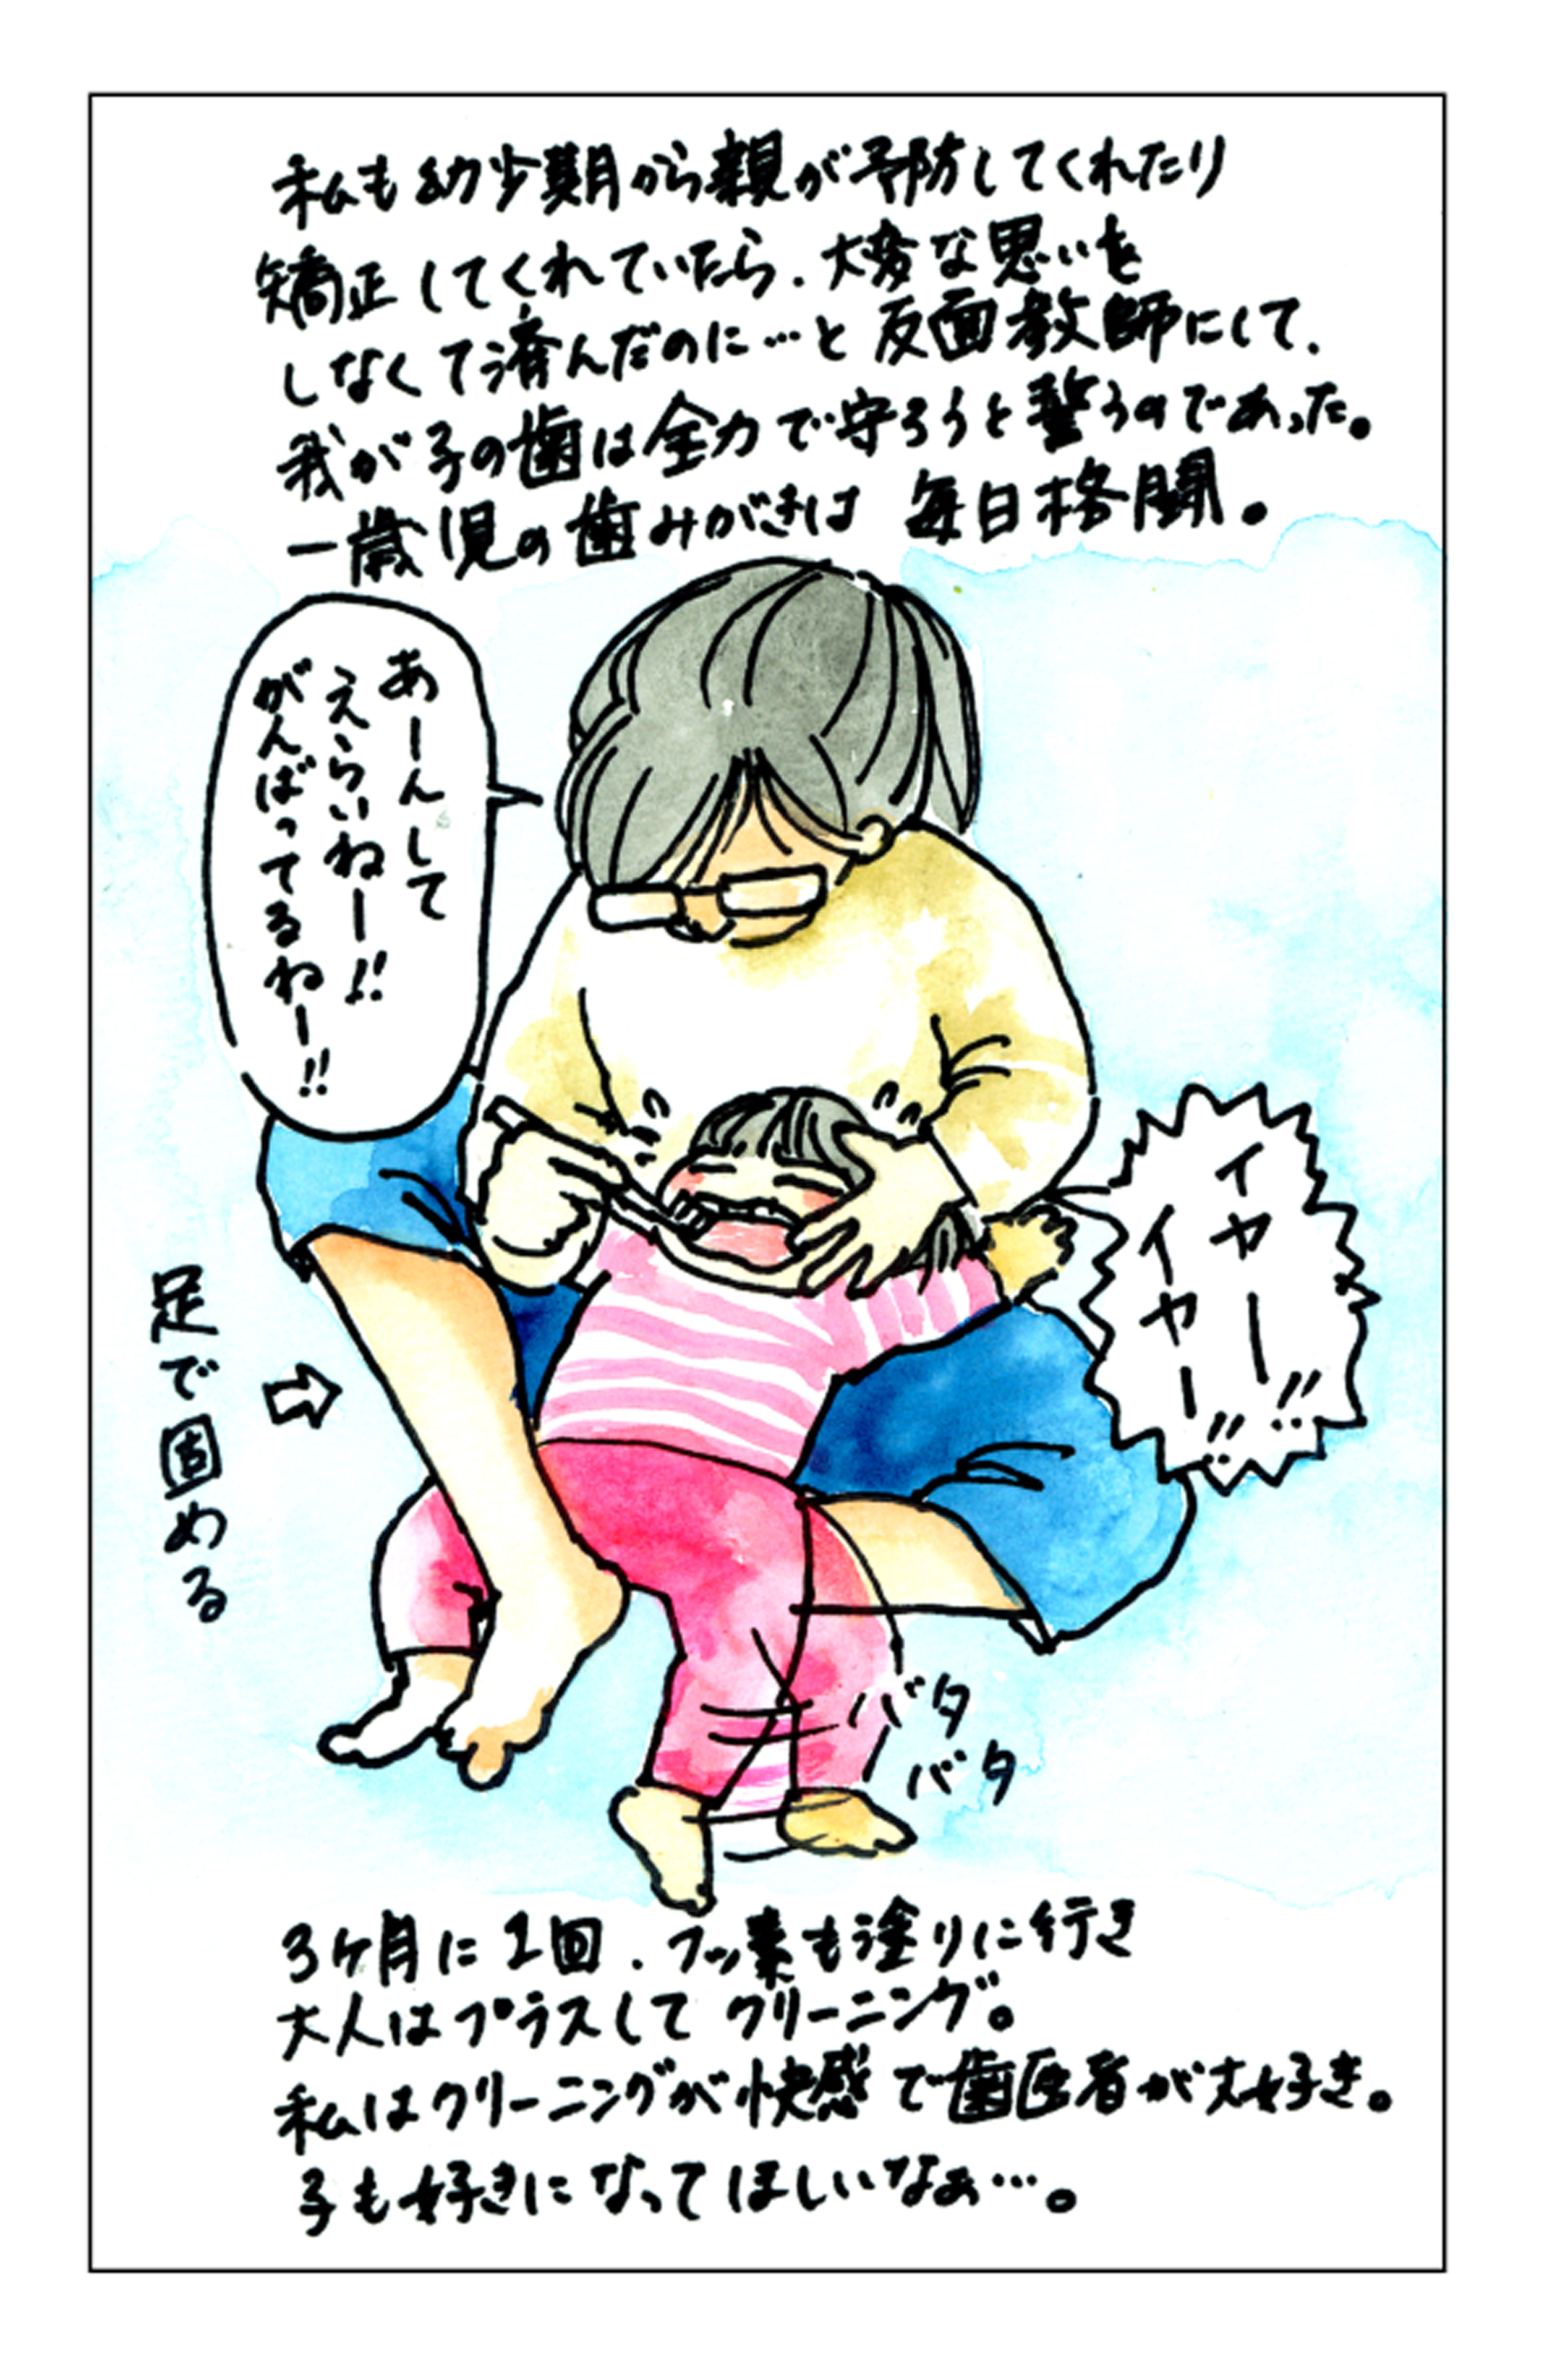 世界の常識 仕事も子育ても 歯が人生を決める 日本だけなぜ汚いままなのか 17年5月28日 エキサイトニュース